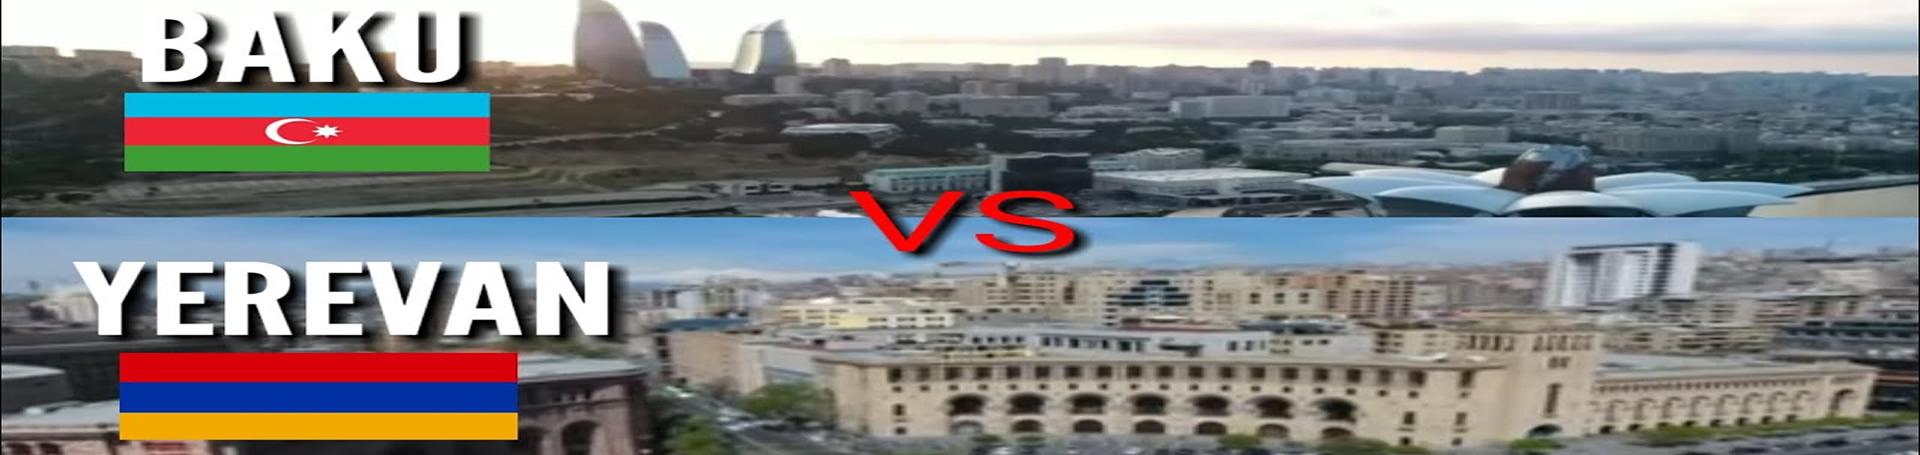 باکو یا ایروان کدام برای سفر بهتر هستند؟